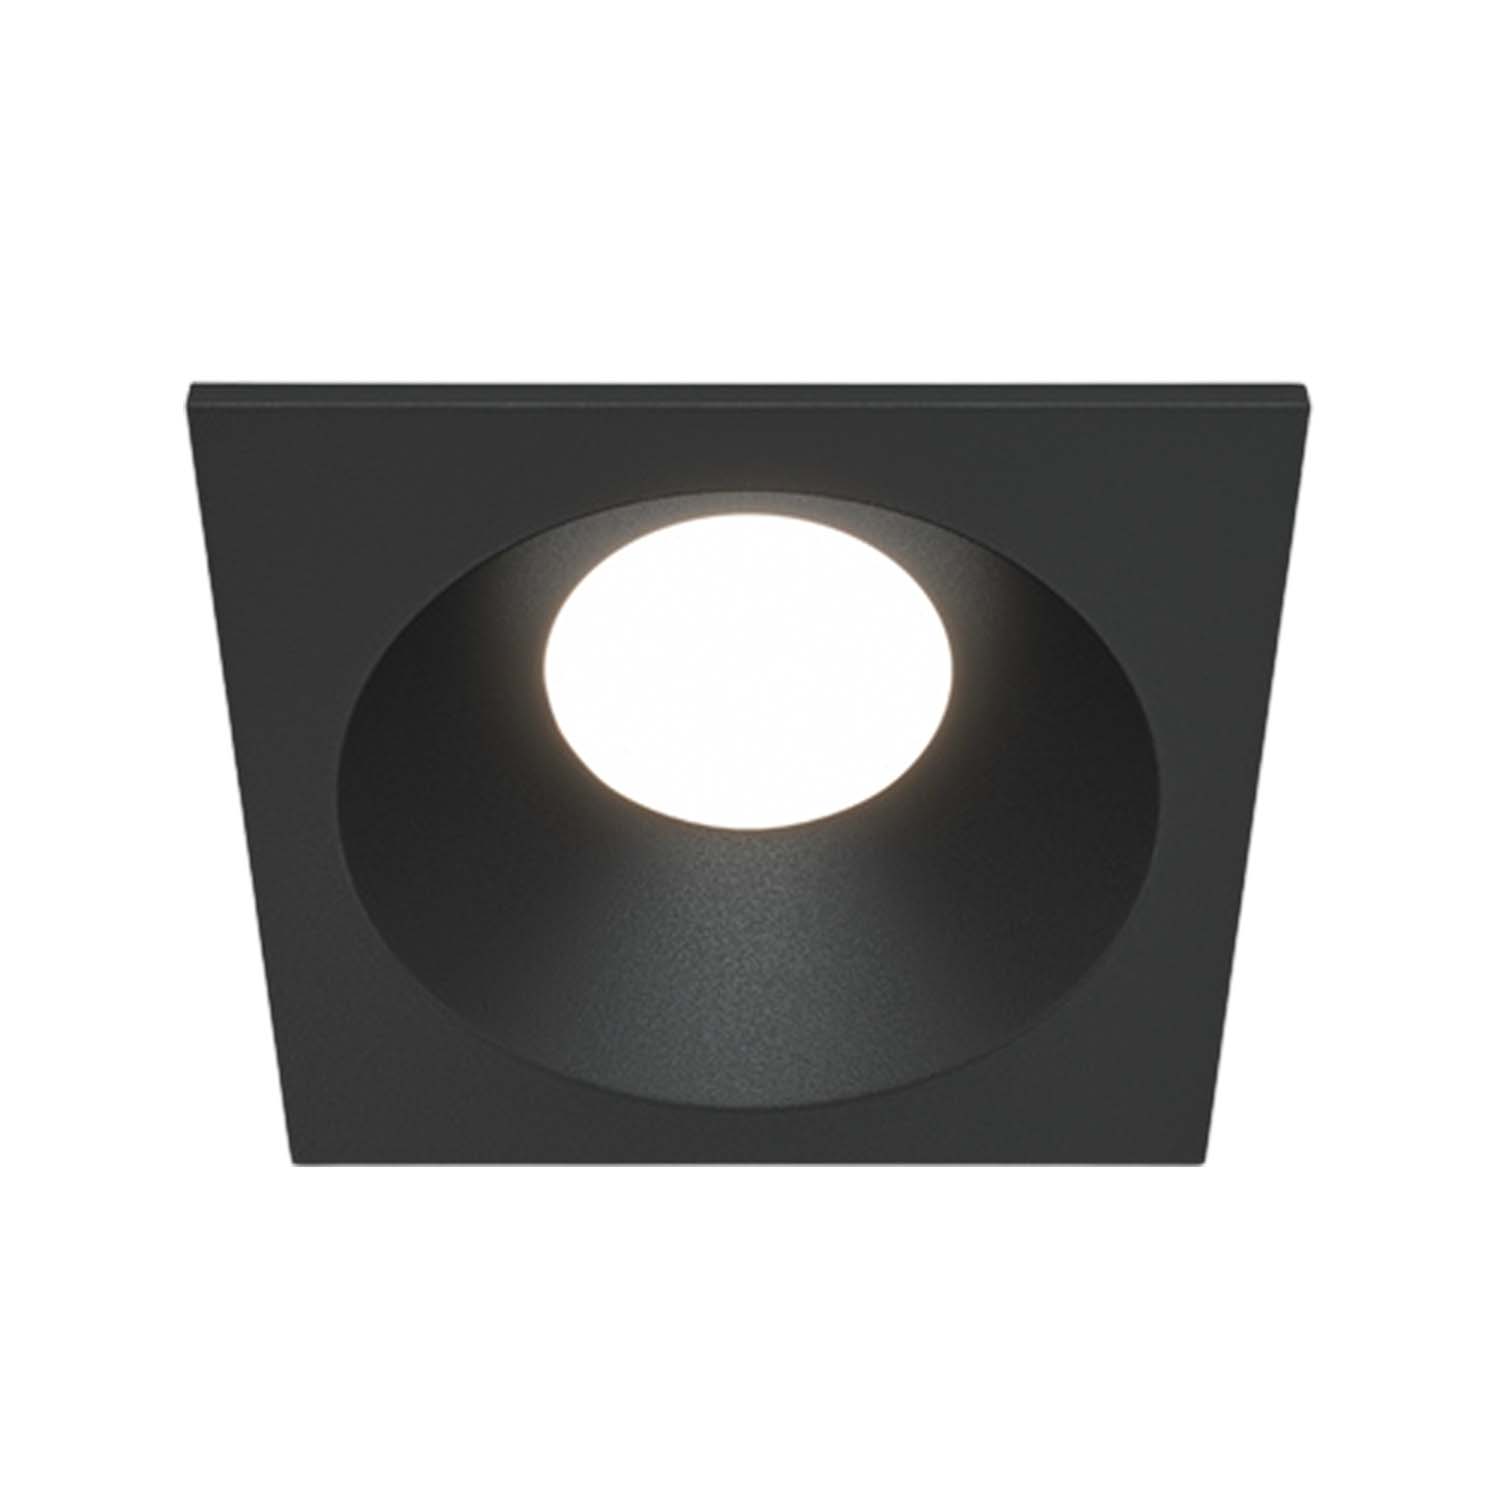 ZOOM - Spot encastré carré extérieur étanche, noir ou blanc, 85mm